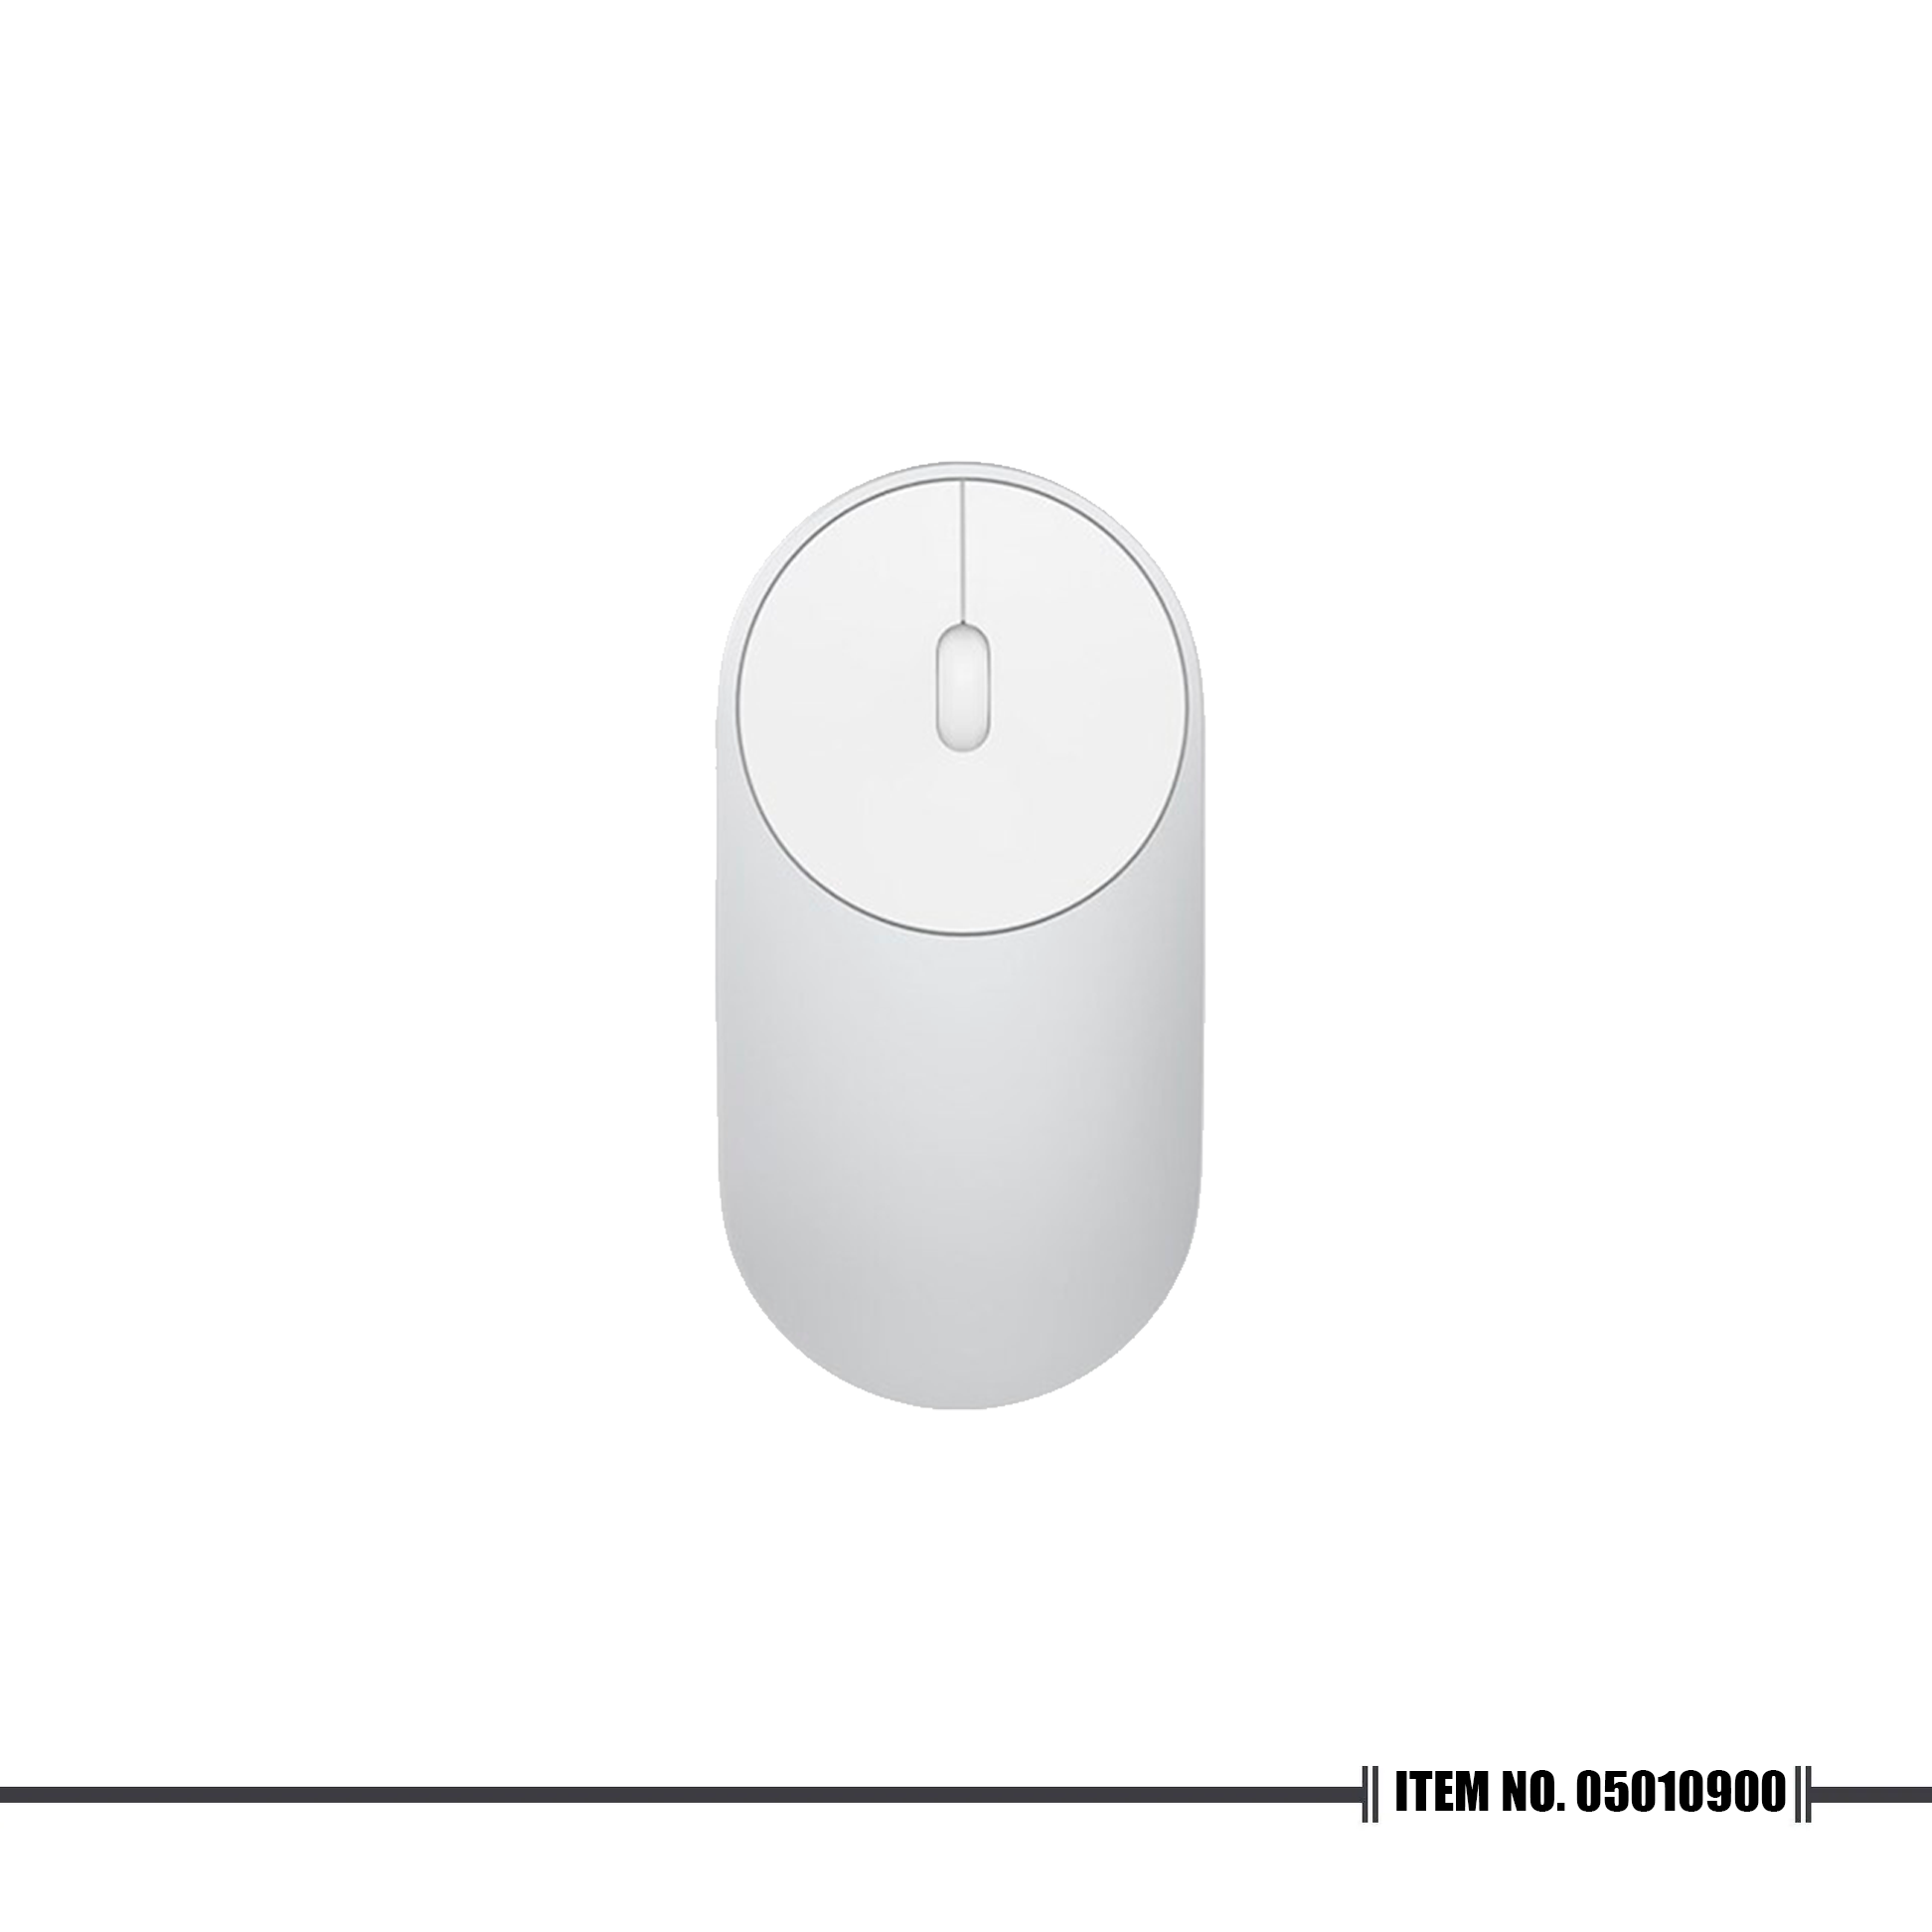 Xiaomi Portable Mouse